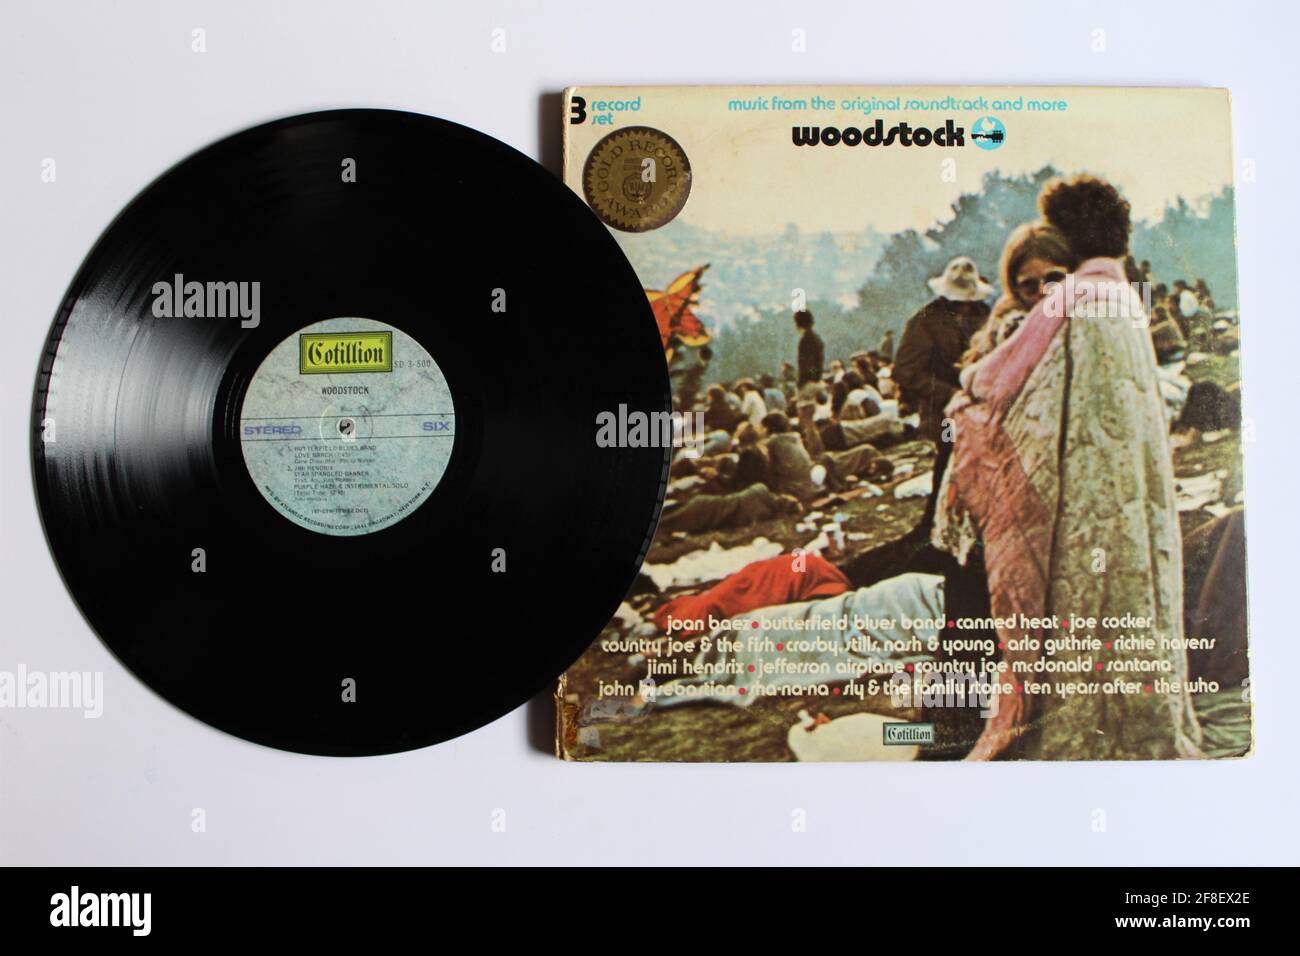 Woodstock: Music from the Original Soundtrack and More ist ein Live-Album mit ausgewählten Auftritten des Woodstock Counterculture Festivals 1969. Stockfoto